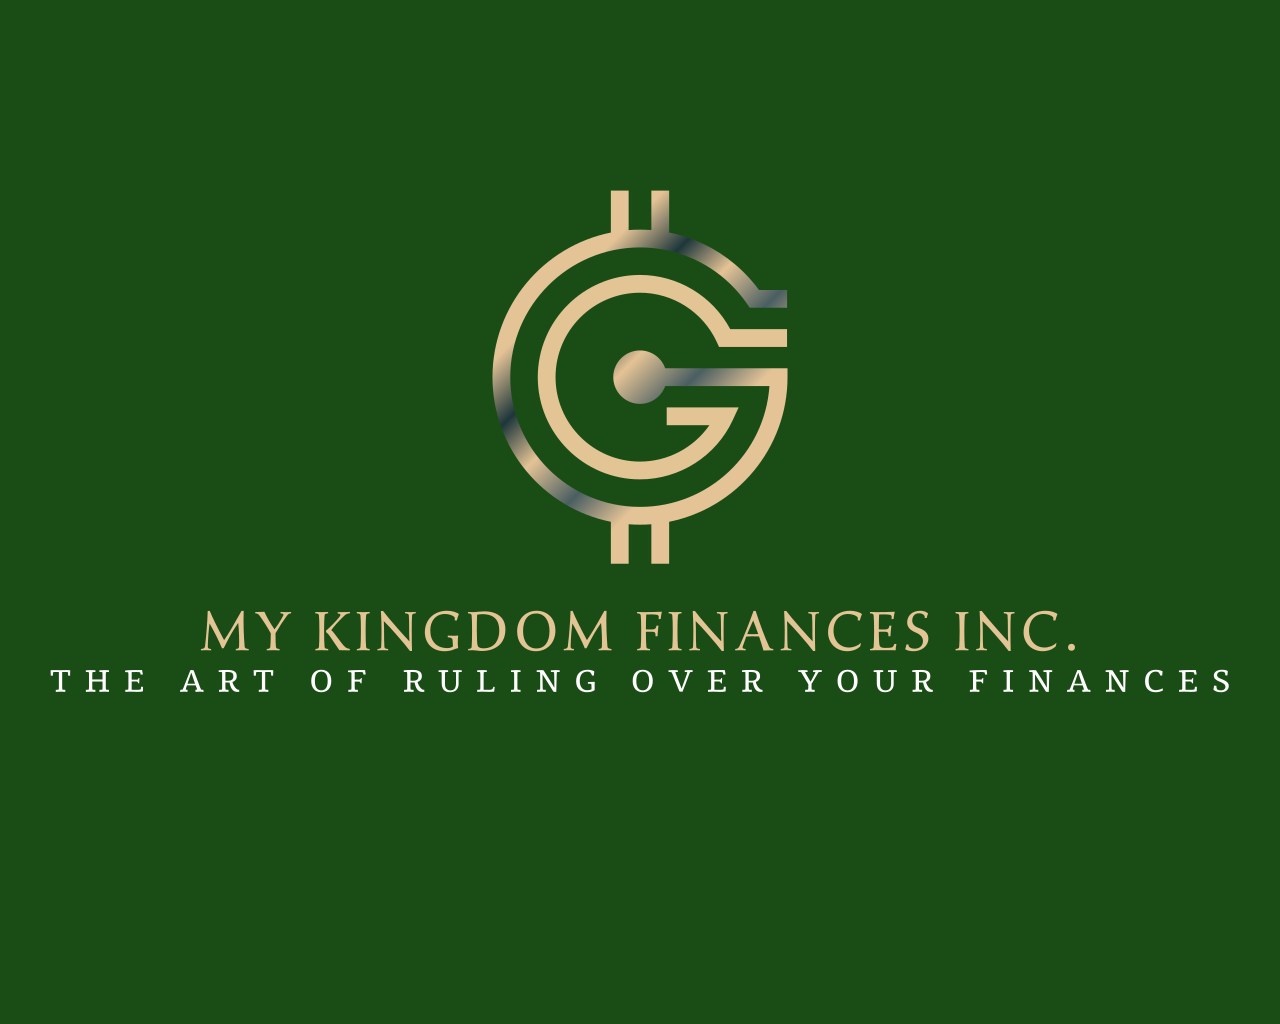 My Kingdom Finances Inc.'s logo